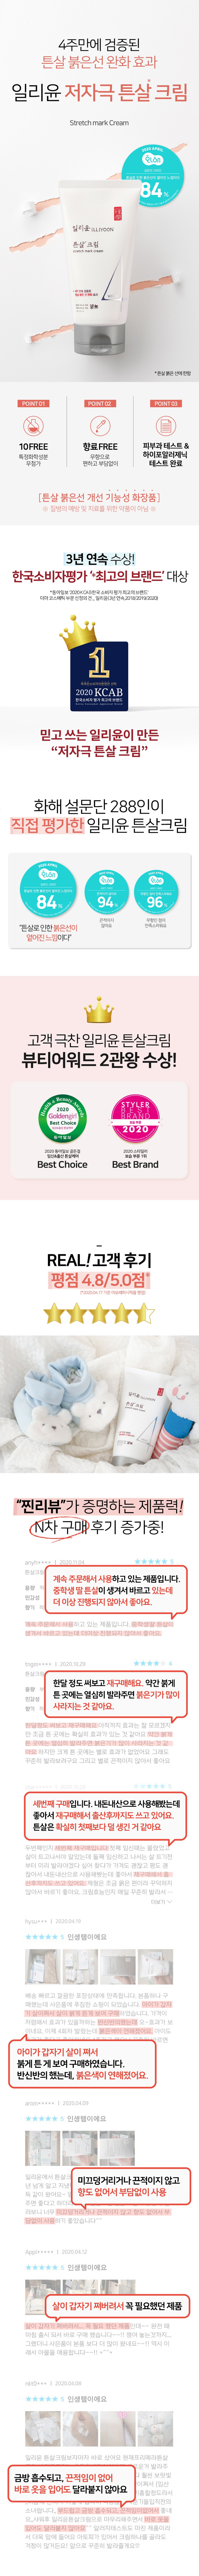 ILLIYOON Smagliature Cream prodotto cosmetico coreano per la cura della pelle negozio online malesia Cina india1